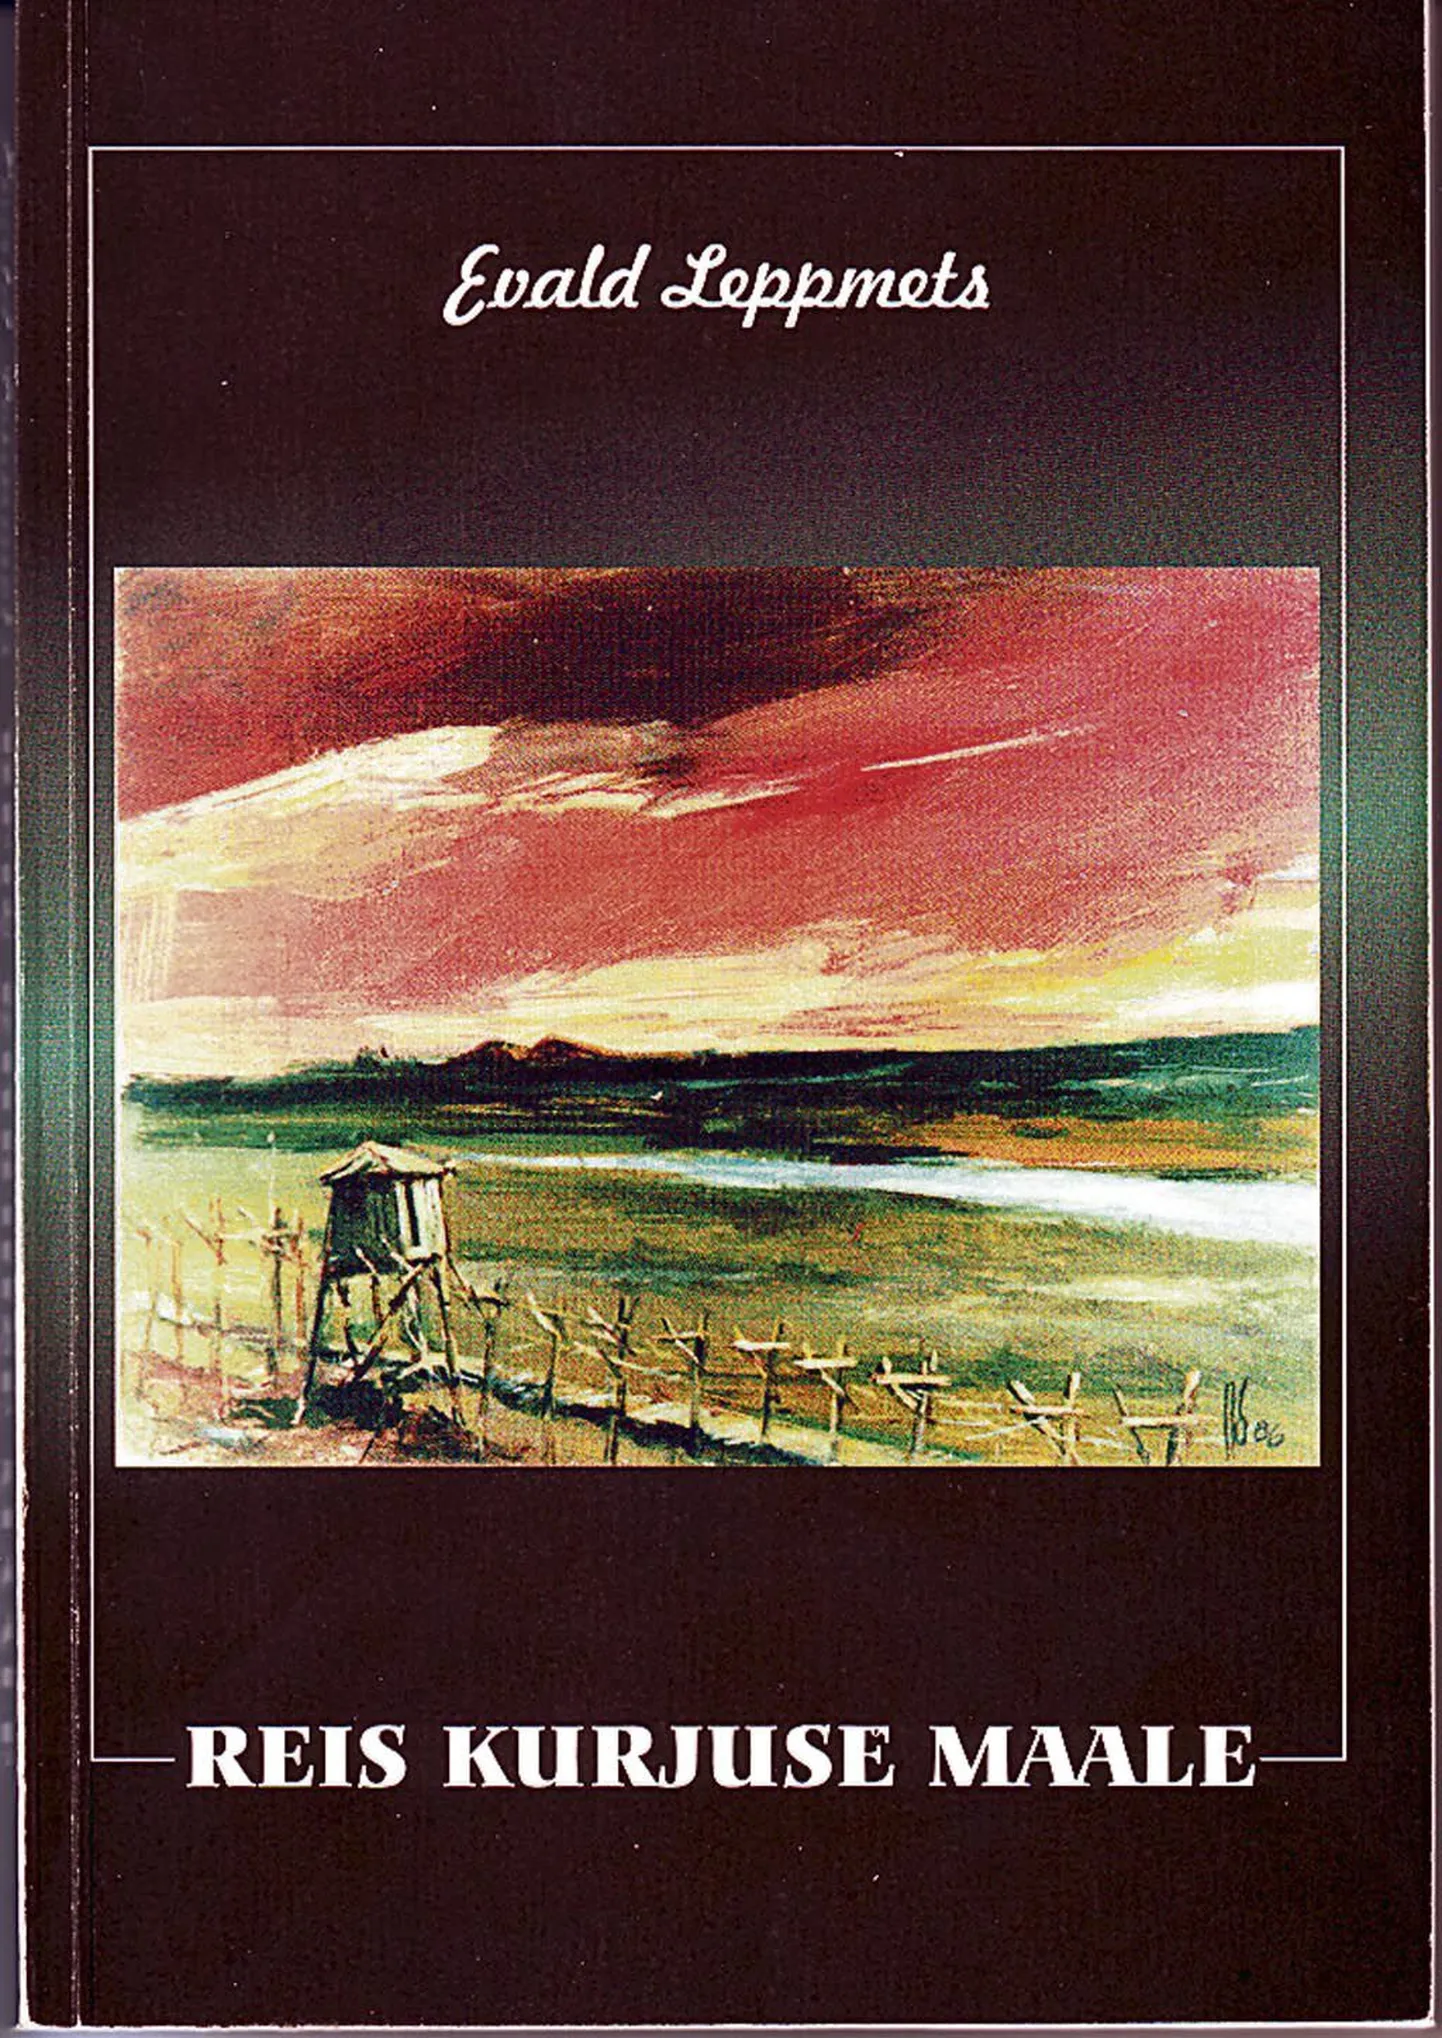 Evald Leppmetsa "Reis kurjuse maale" aitab meenutada kurja, mida võõrvõim on eestlastele teinud.